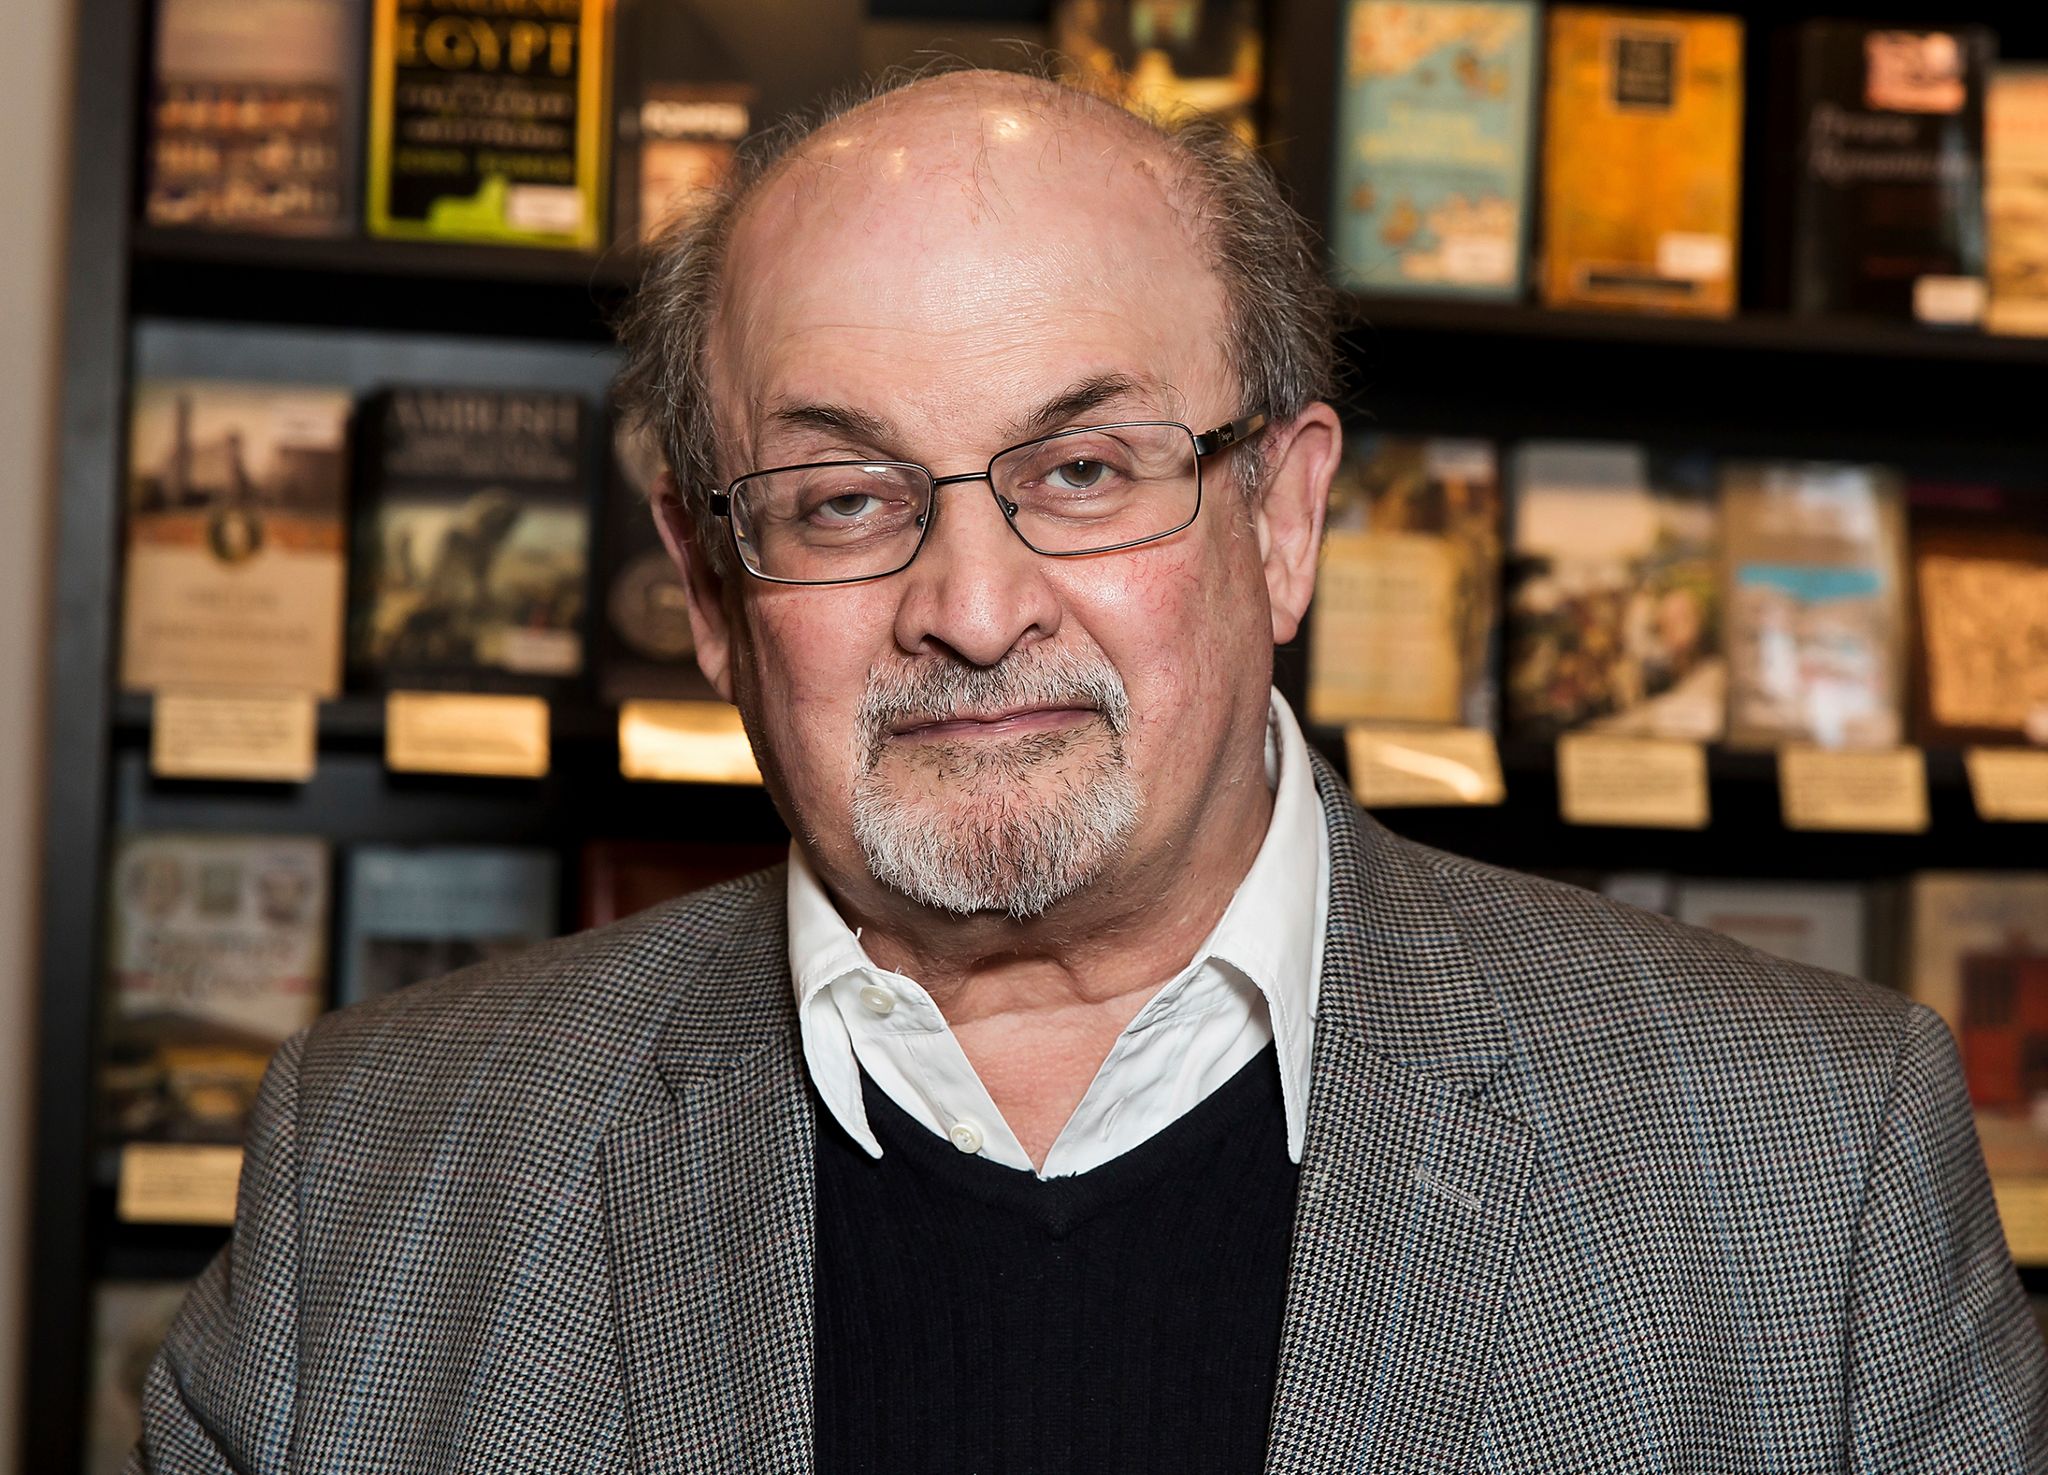 Salman Rushdie bei einer Veranstaltung in London. Der Schriftsteller soll sich nach der Messerattacke auf dem Weg der Besserung befinden.